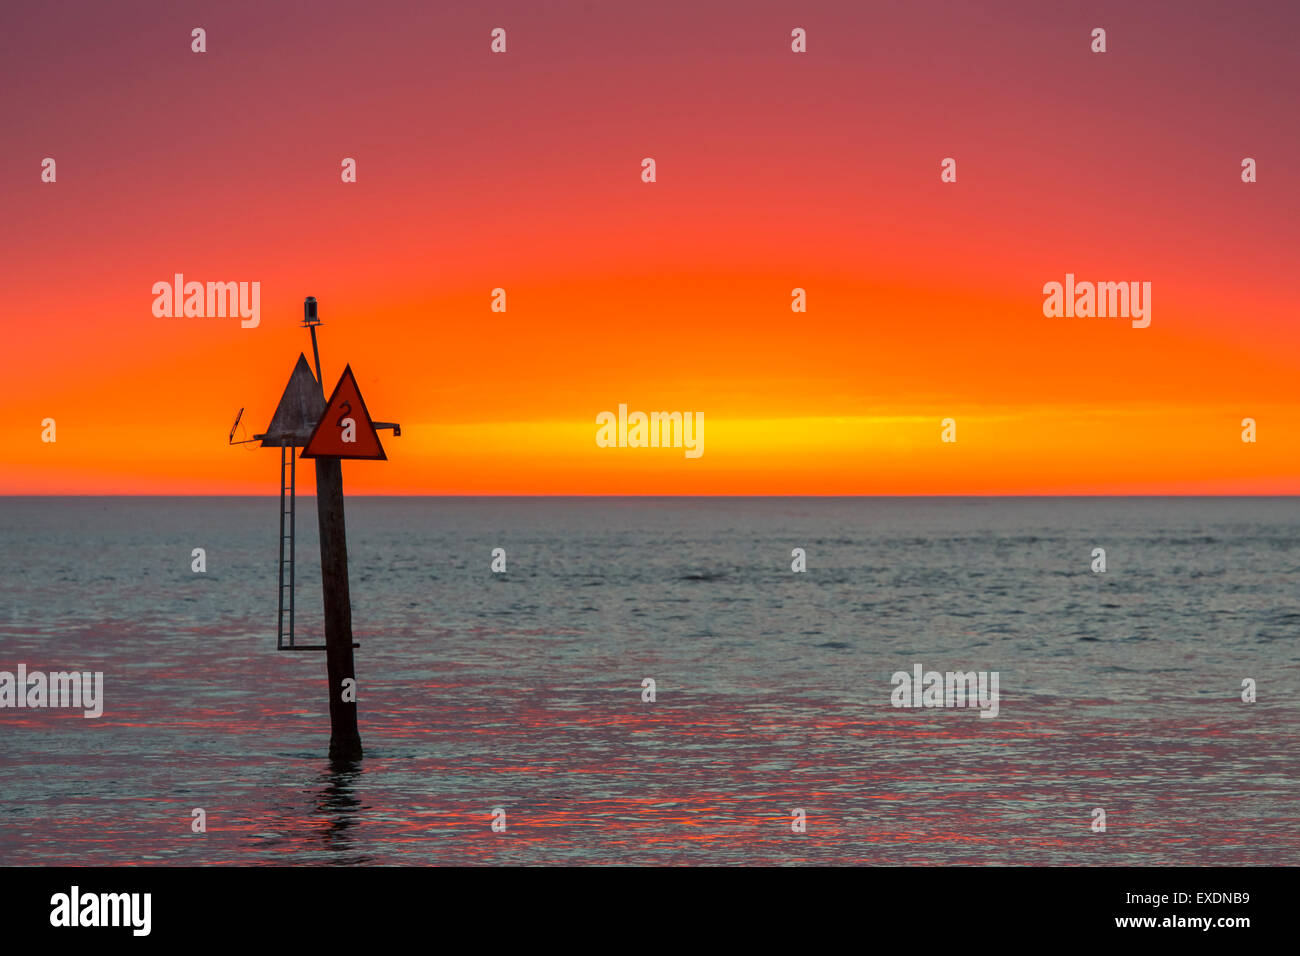 Navigazione marker per via navigabile nel Golfo del Messico presso il Molo Venezia in Florida con il cielo al tramonto Foto Stock